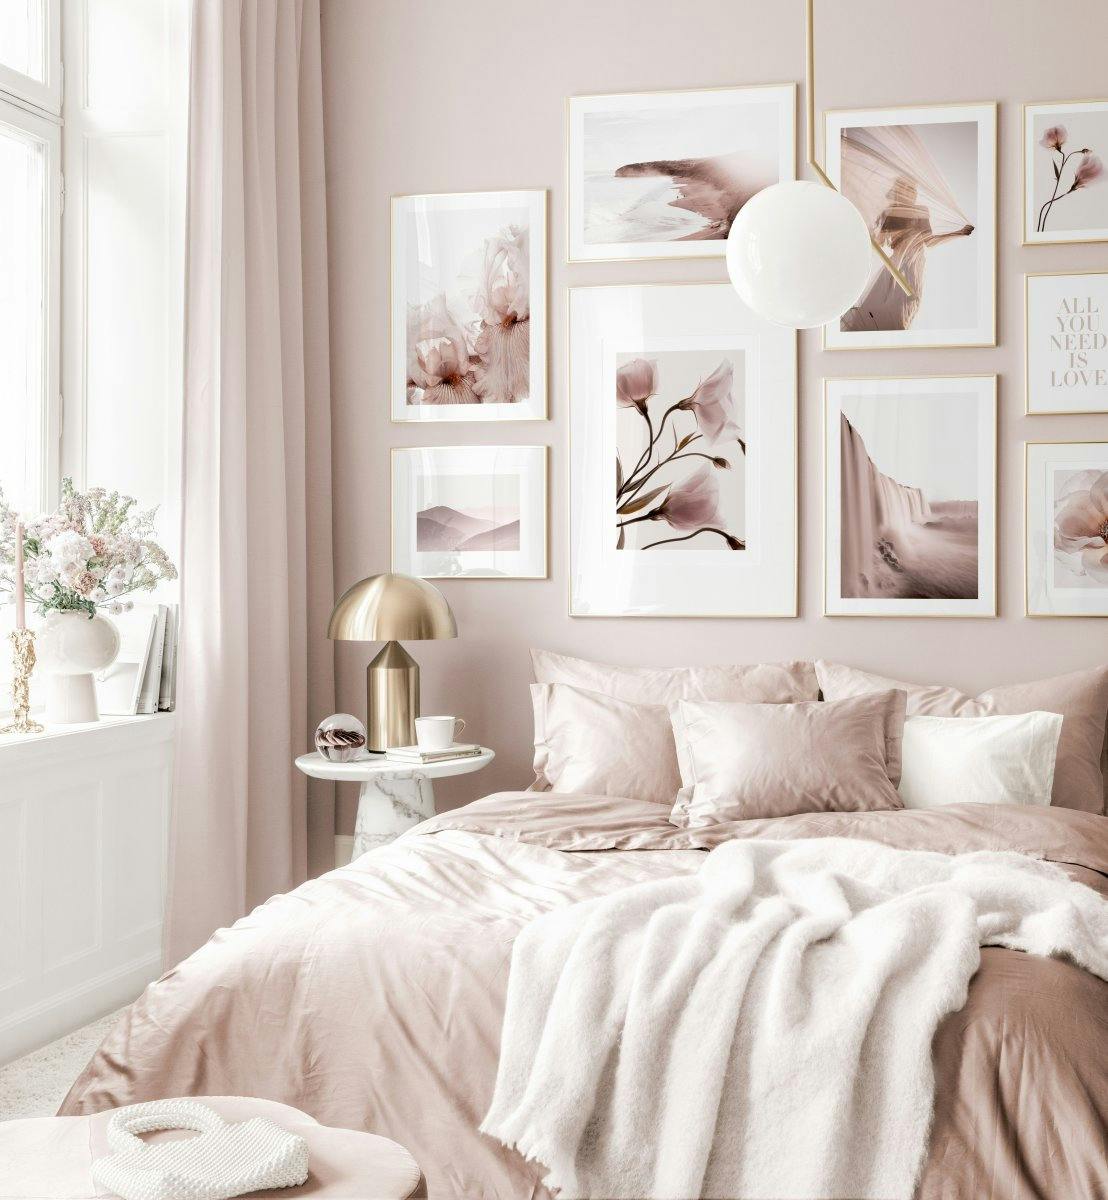 Modna galeria obrazow sztuka rozowa sypialnia plakaty kwiatowe zlote ramki